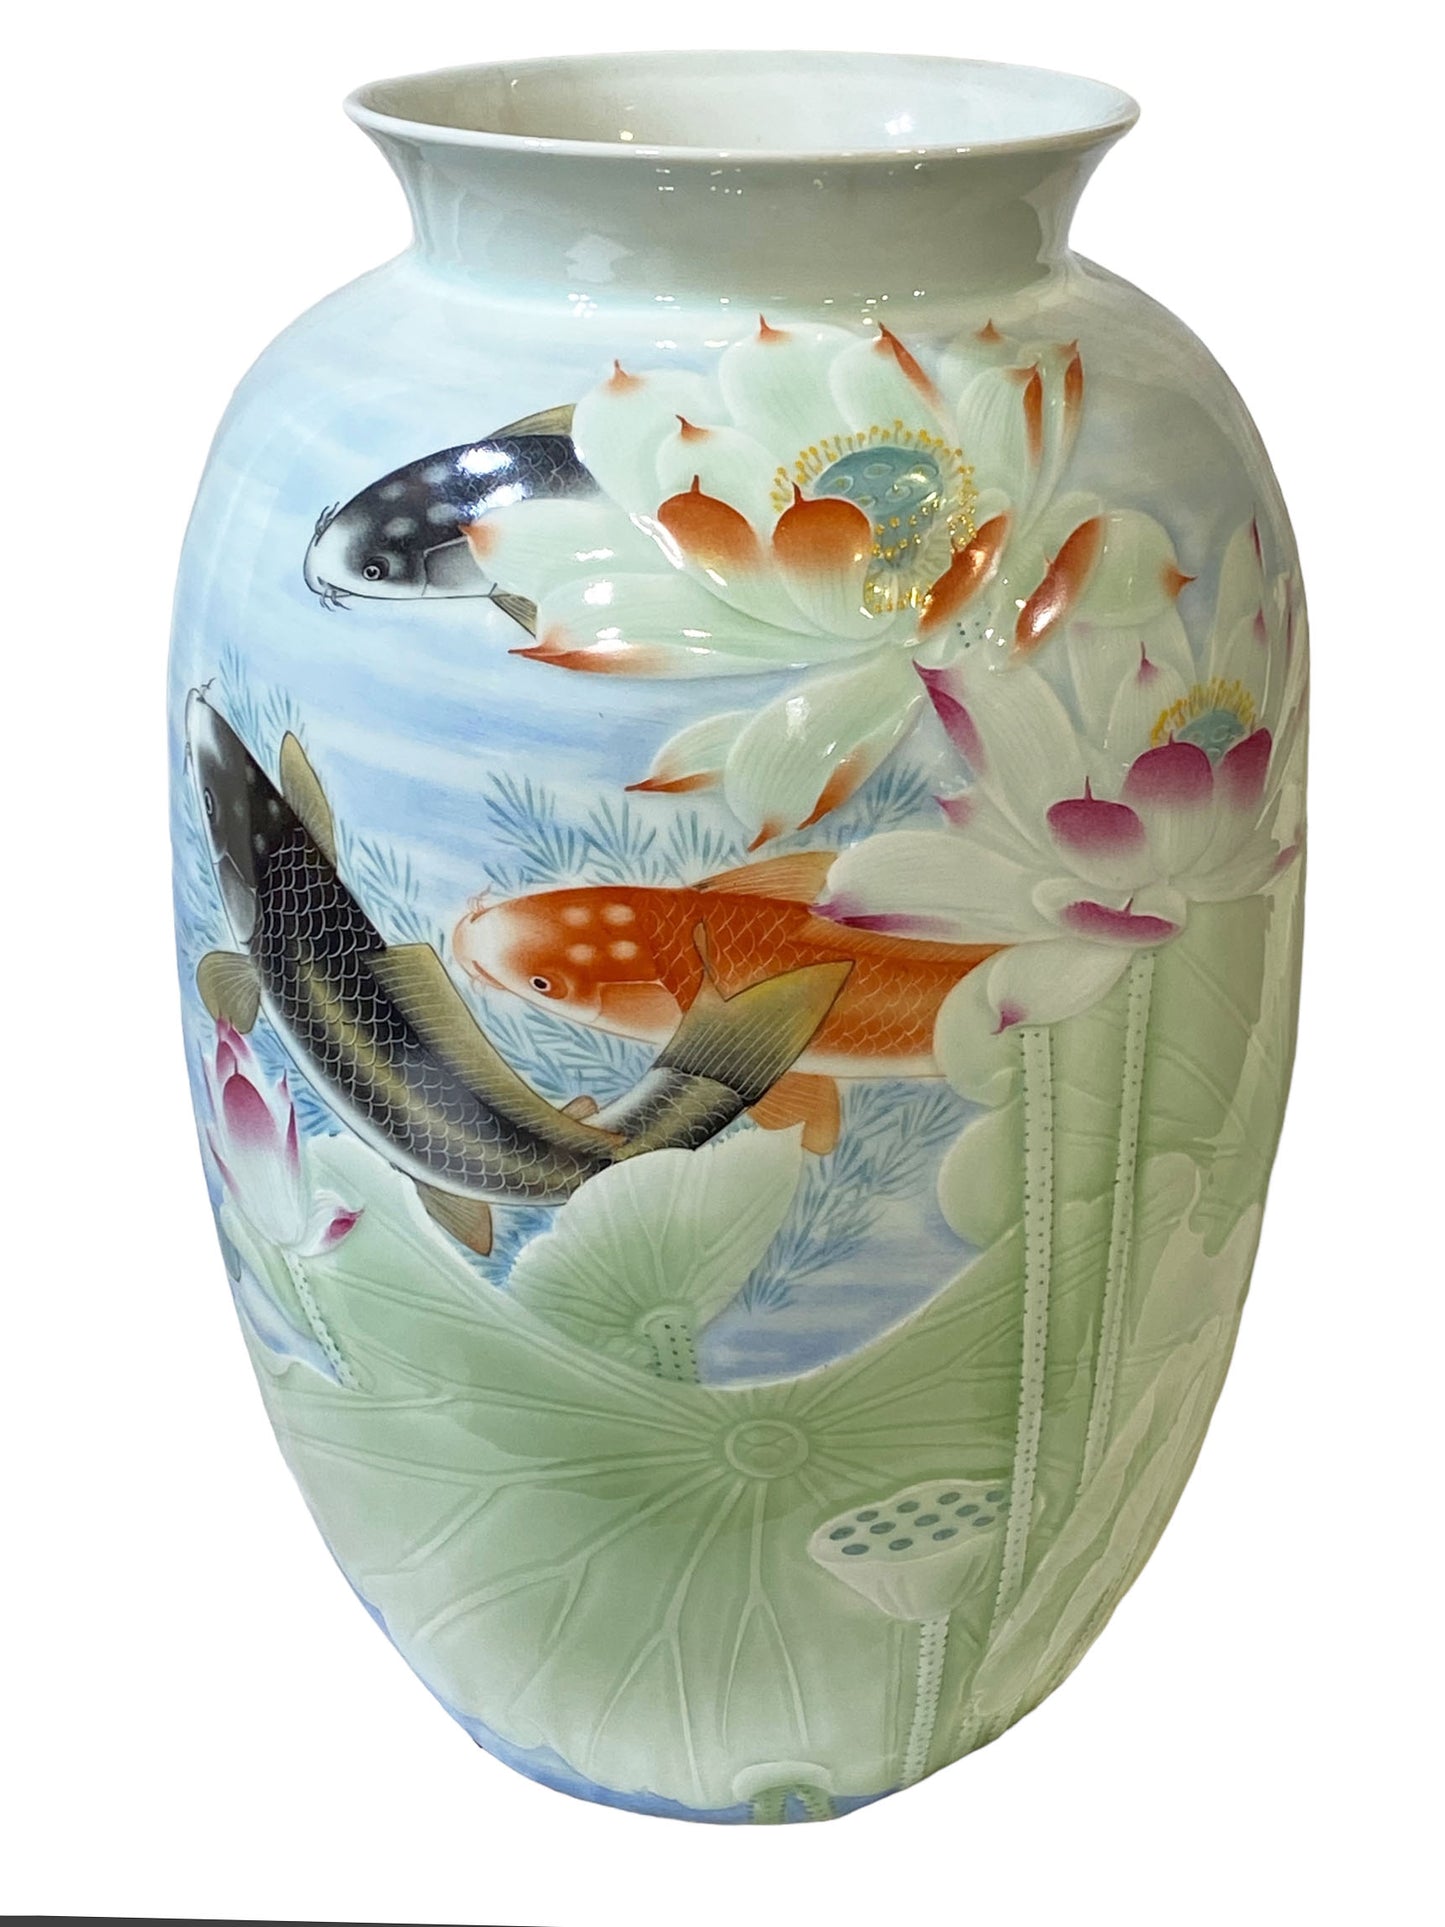 #2354 Superb LG Chinese  Porcelain Celadon Vase W/ Carps 17.25"  H